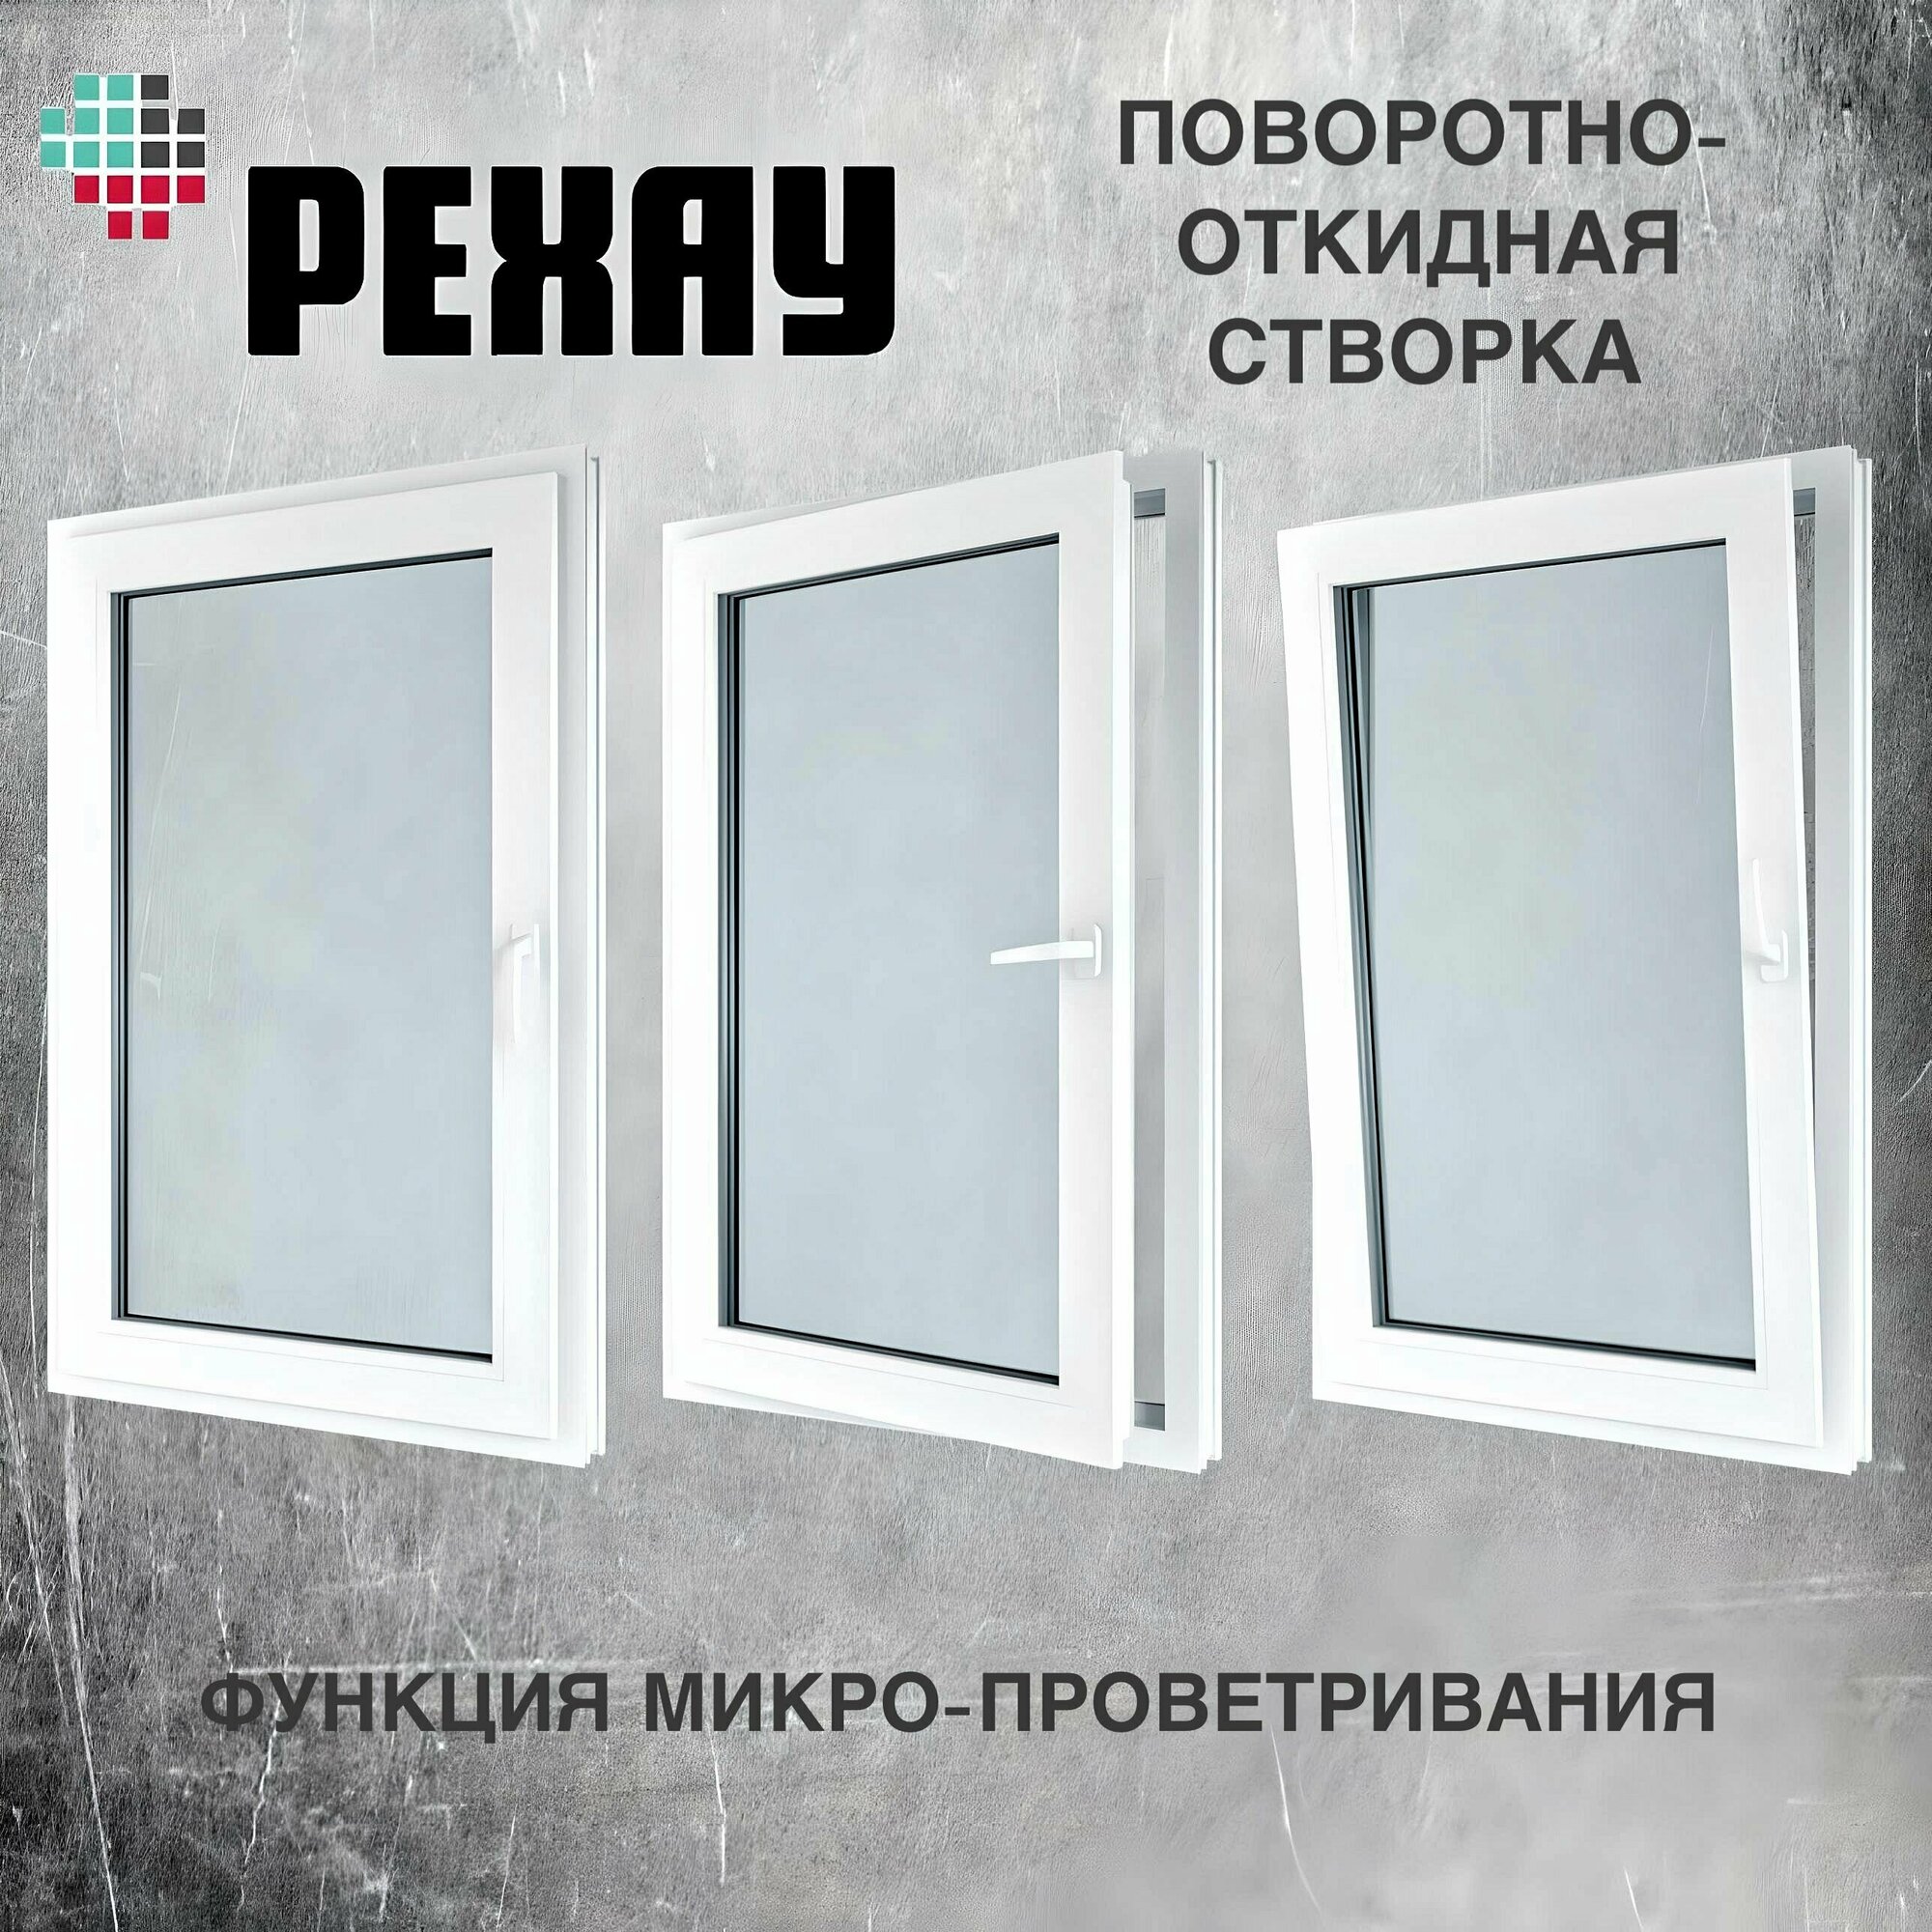 Окно пвх РЕХАУ (800х1000)мм, двустворчатое, с глухой правой и поворотно-откидной левой створкой, энергосберегающий стеклопакет, 2 стекла, фурнитура VORNE.